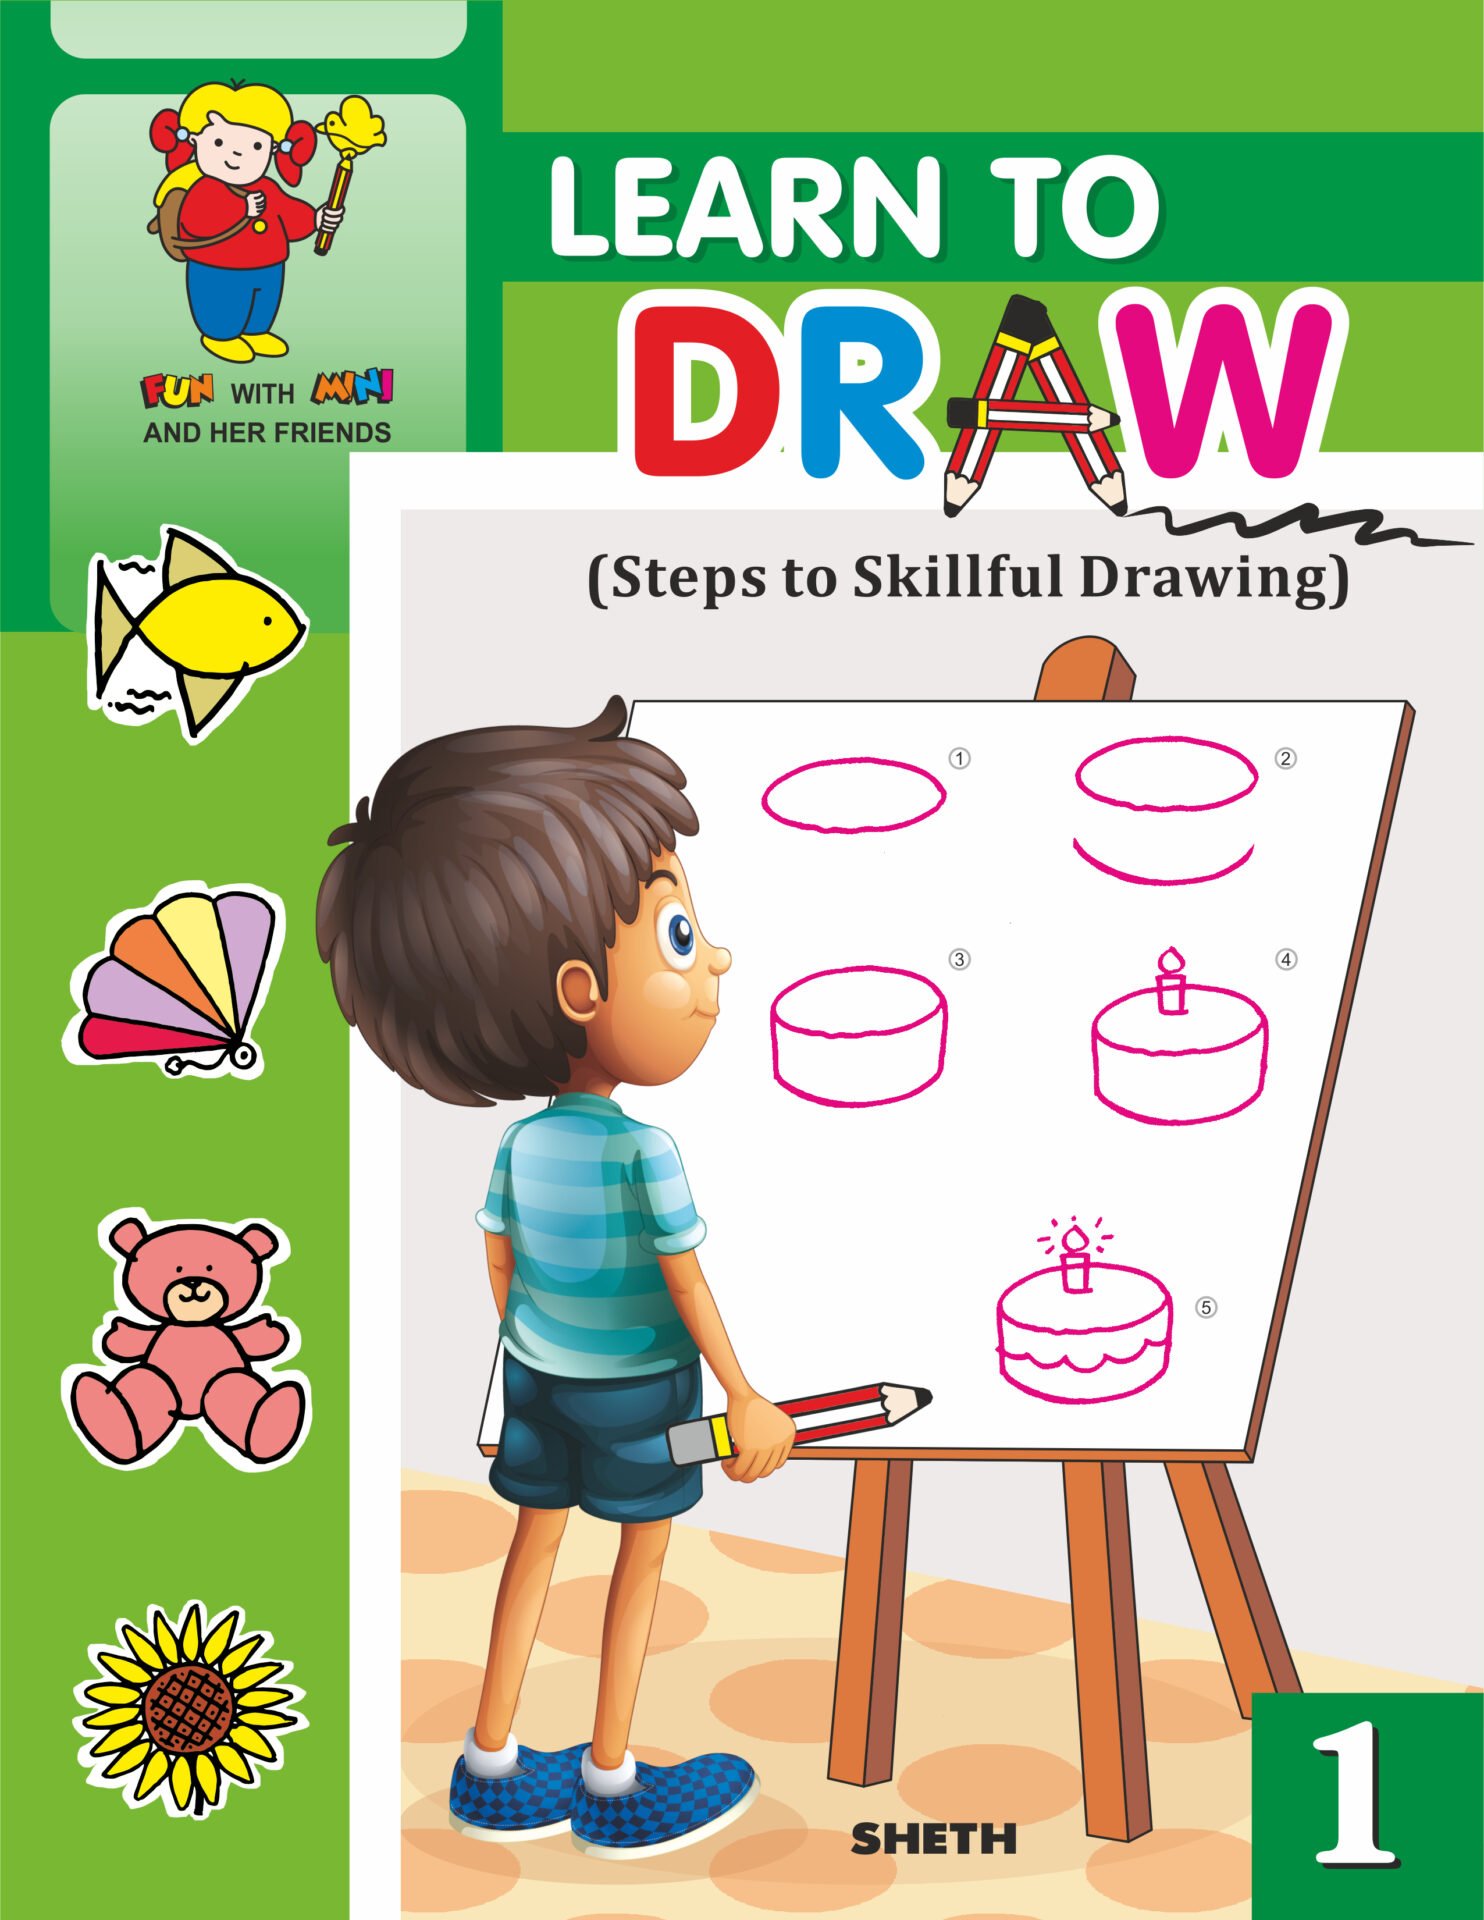 Kids Drawings Images - Free Download on Freepik